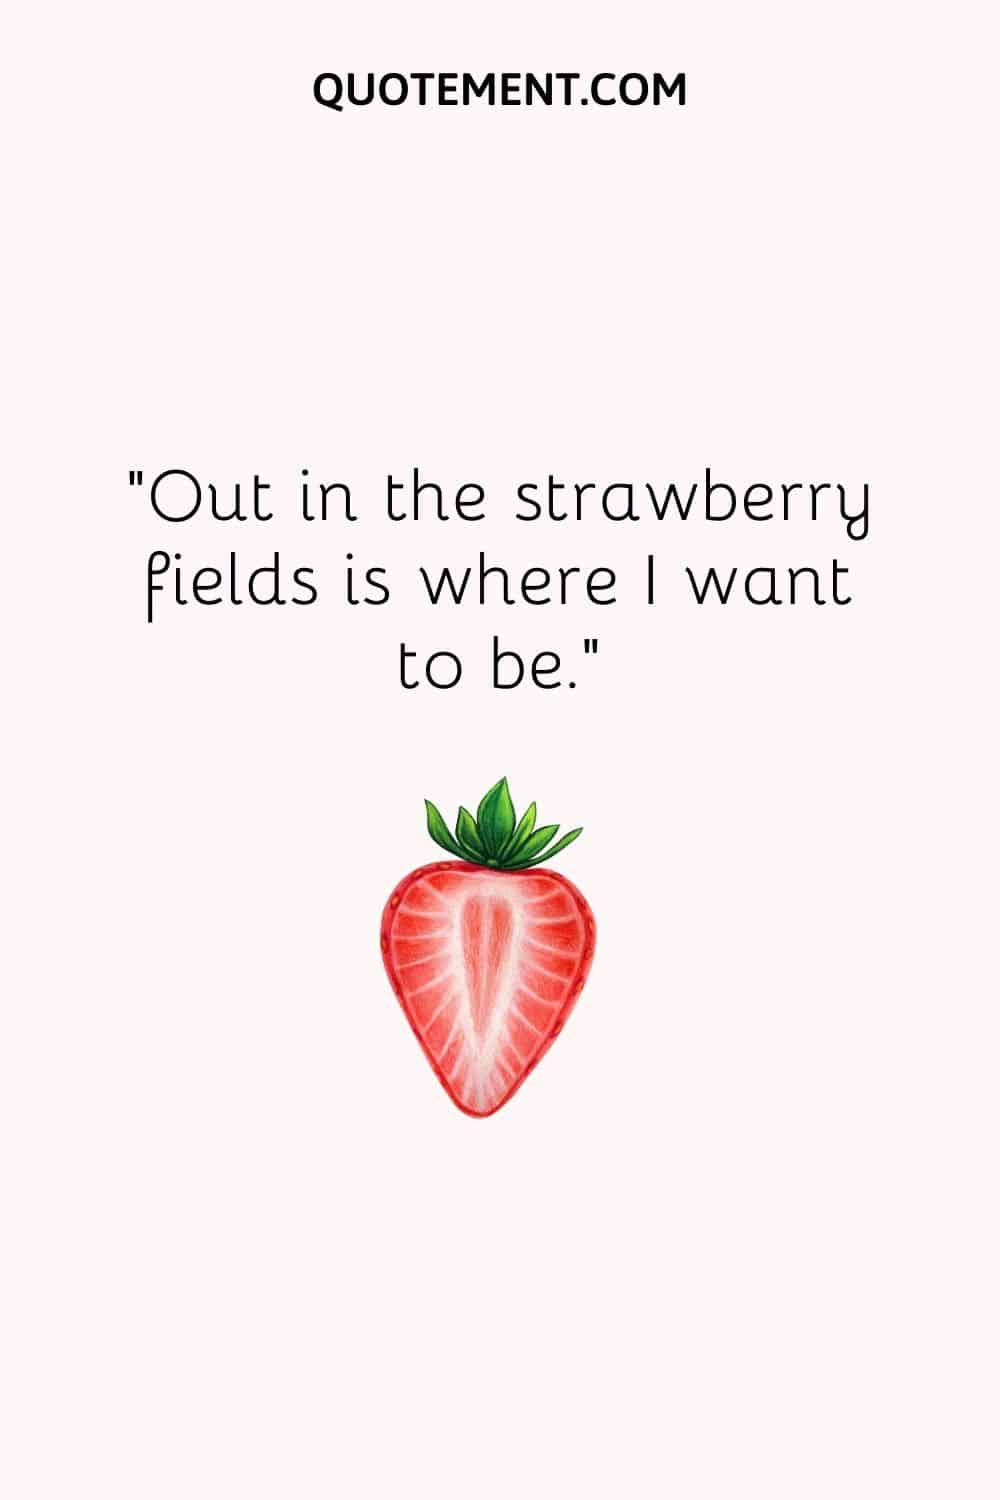 En los campos de fresas es donde quiero estar